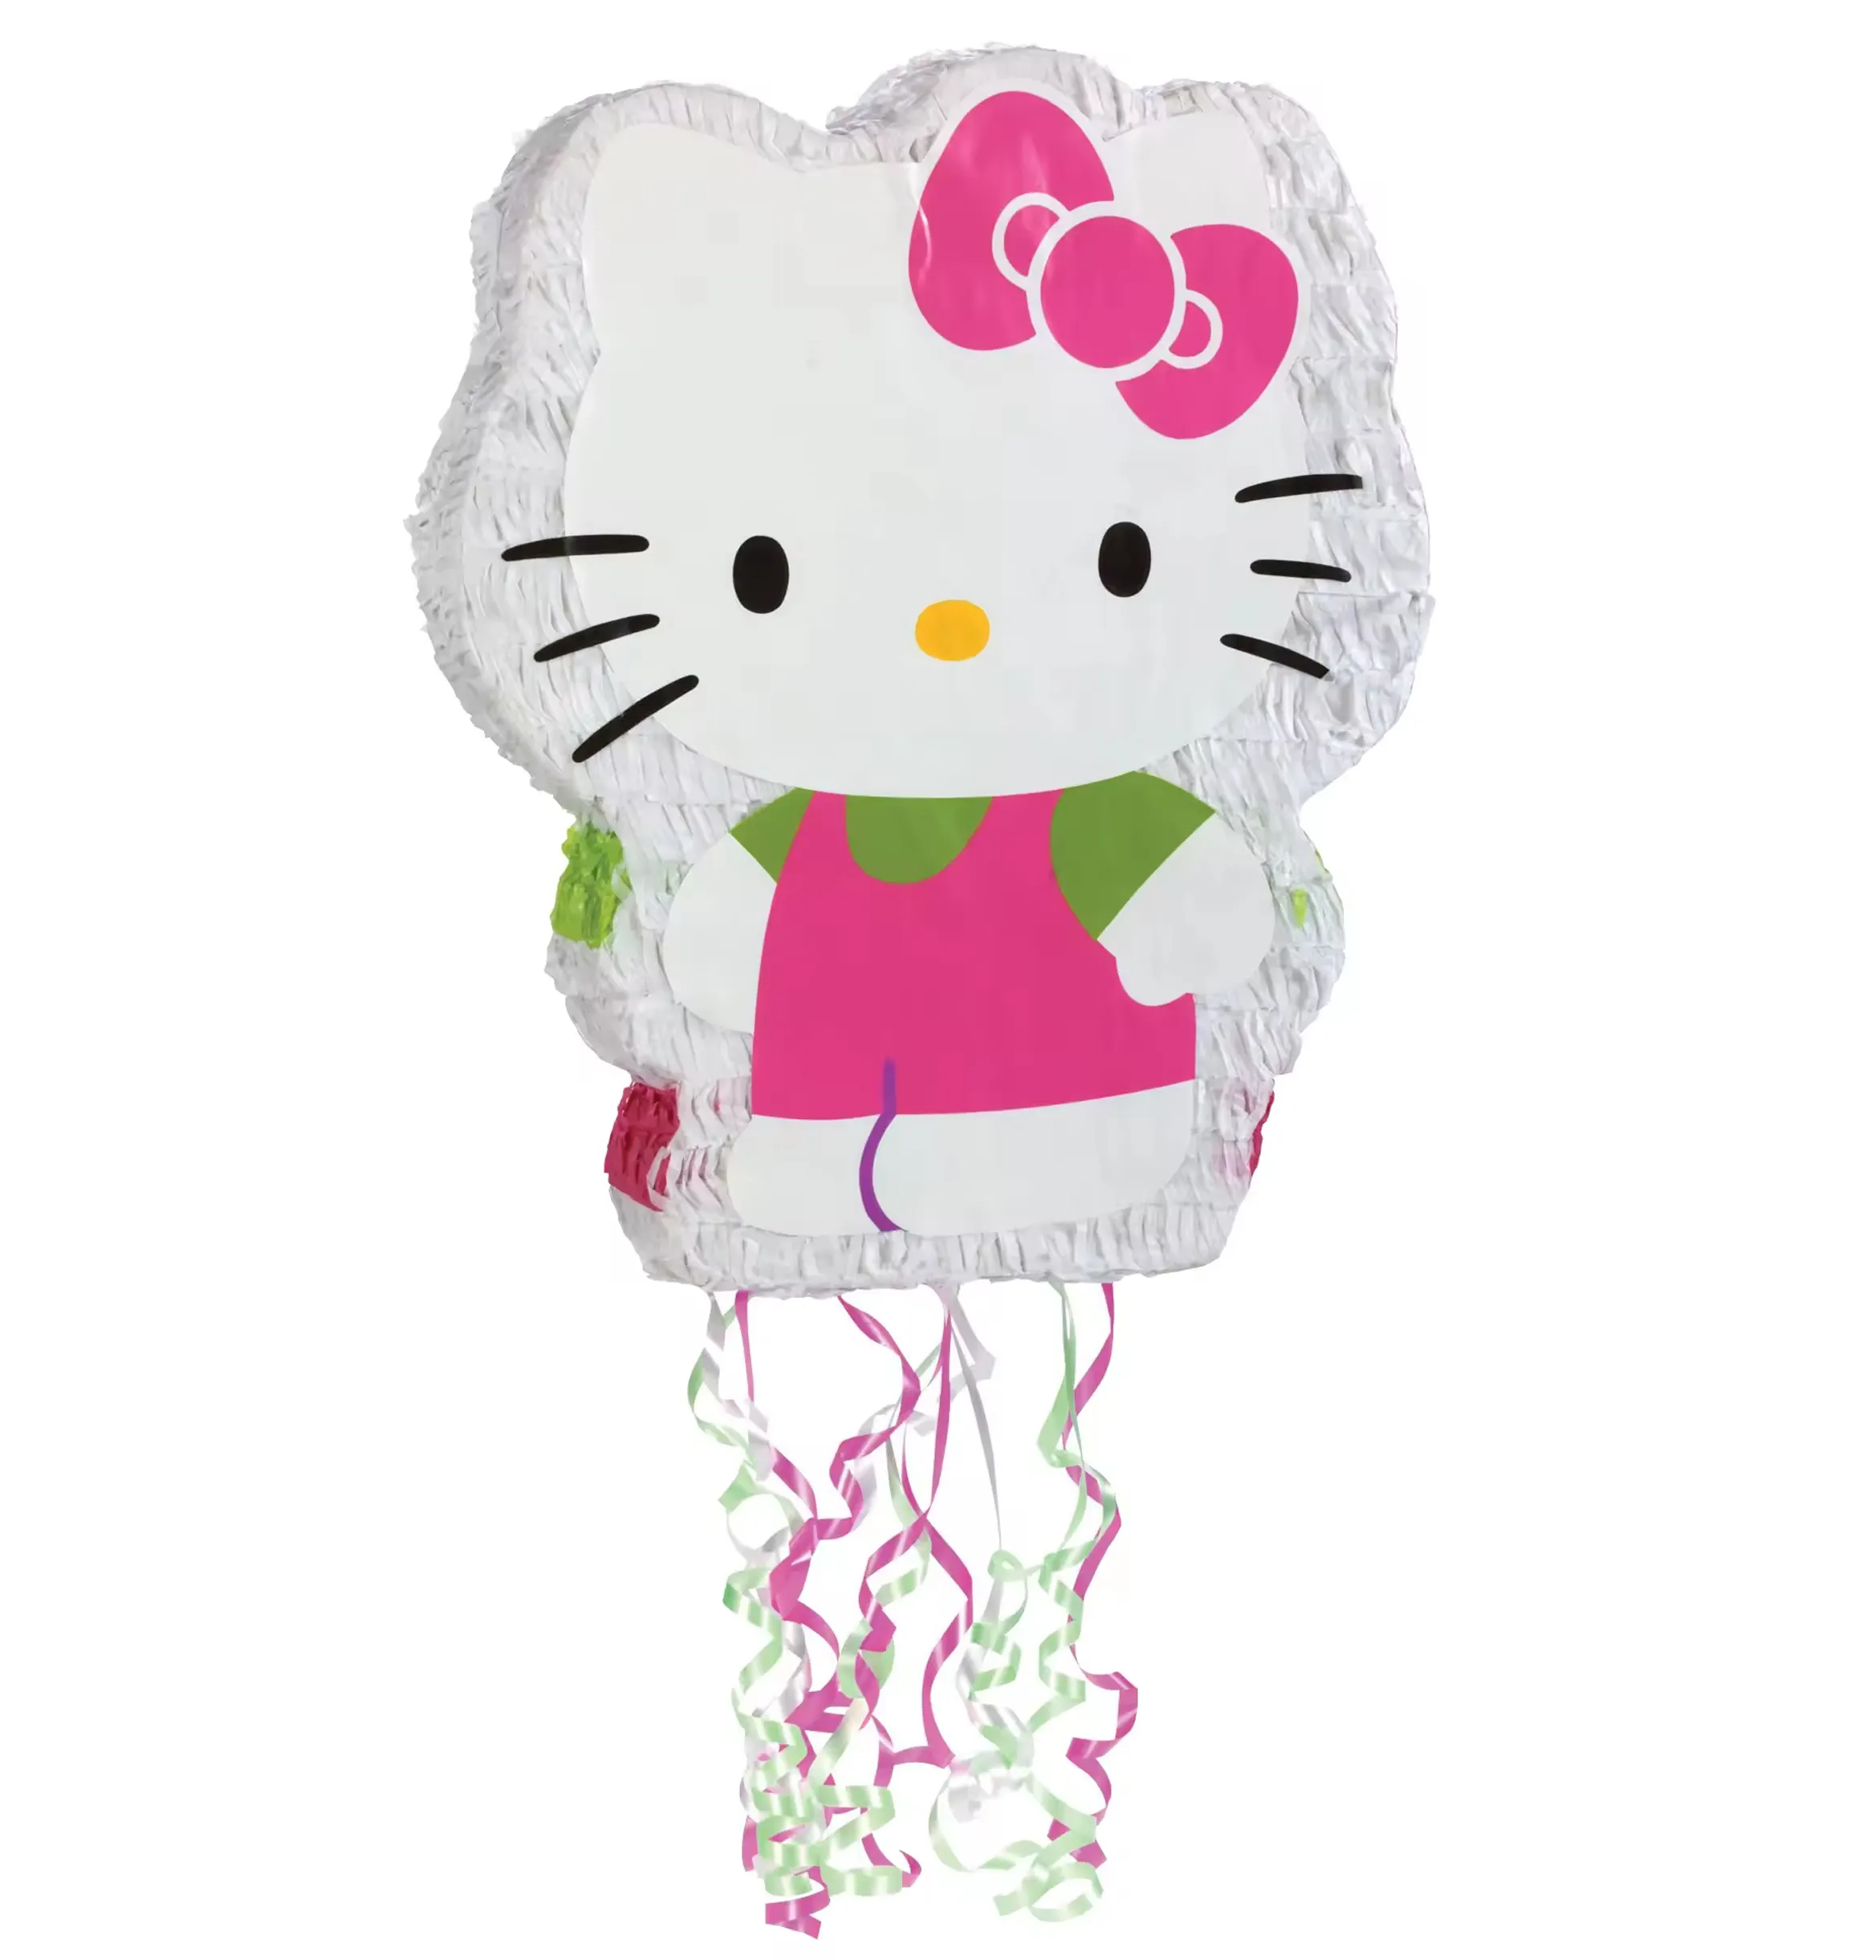 Toplu Hello Kitty Pinatas, güvenilir tedarikçiden yüksek kaliteli parti malzemeleri